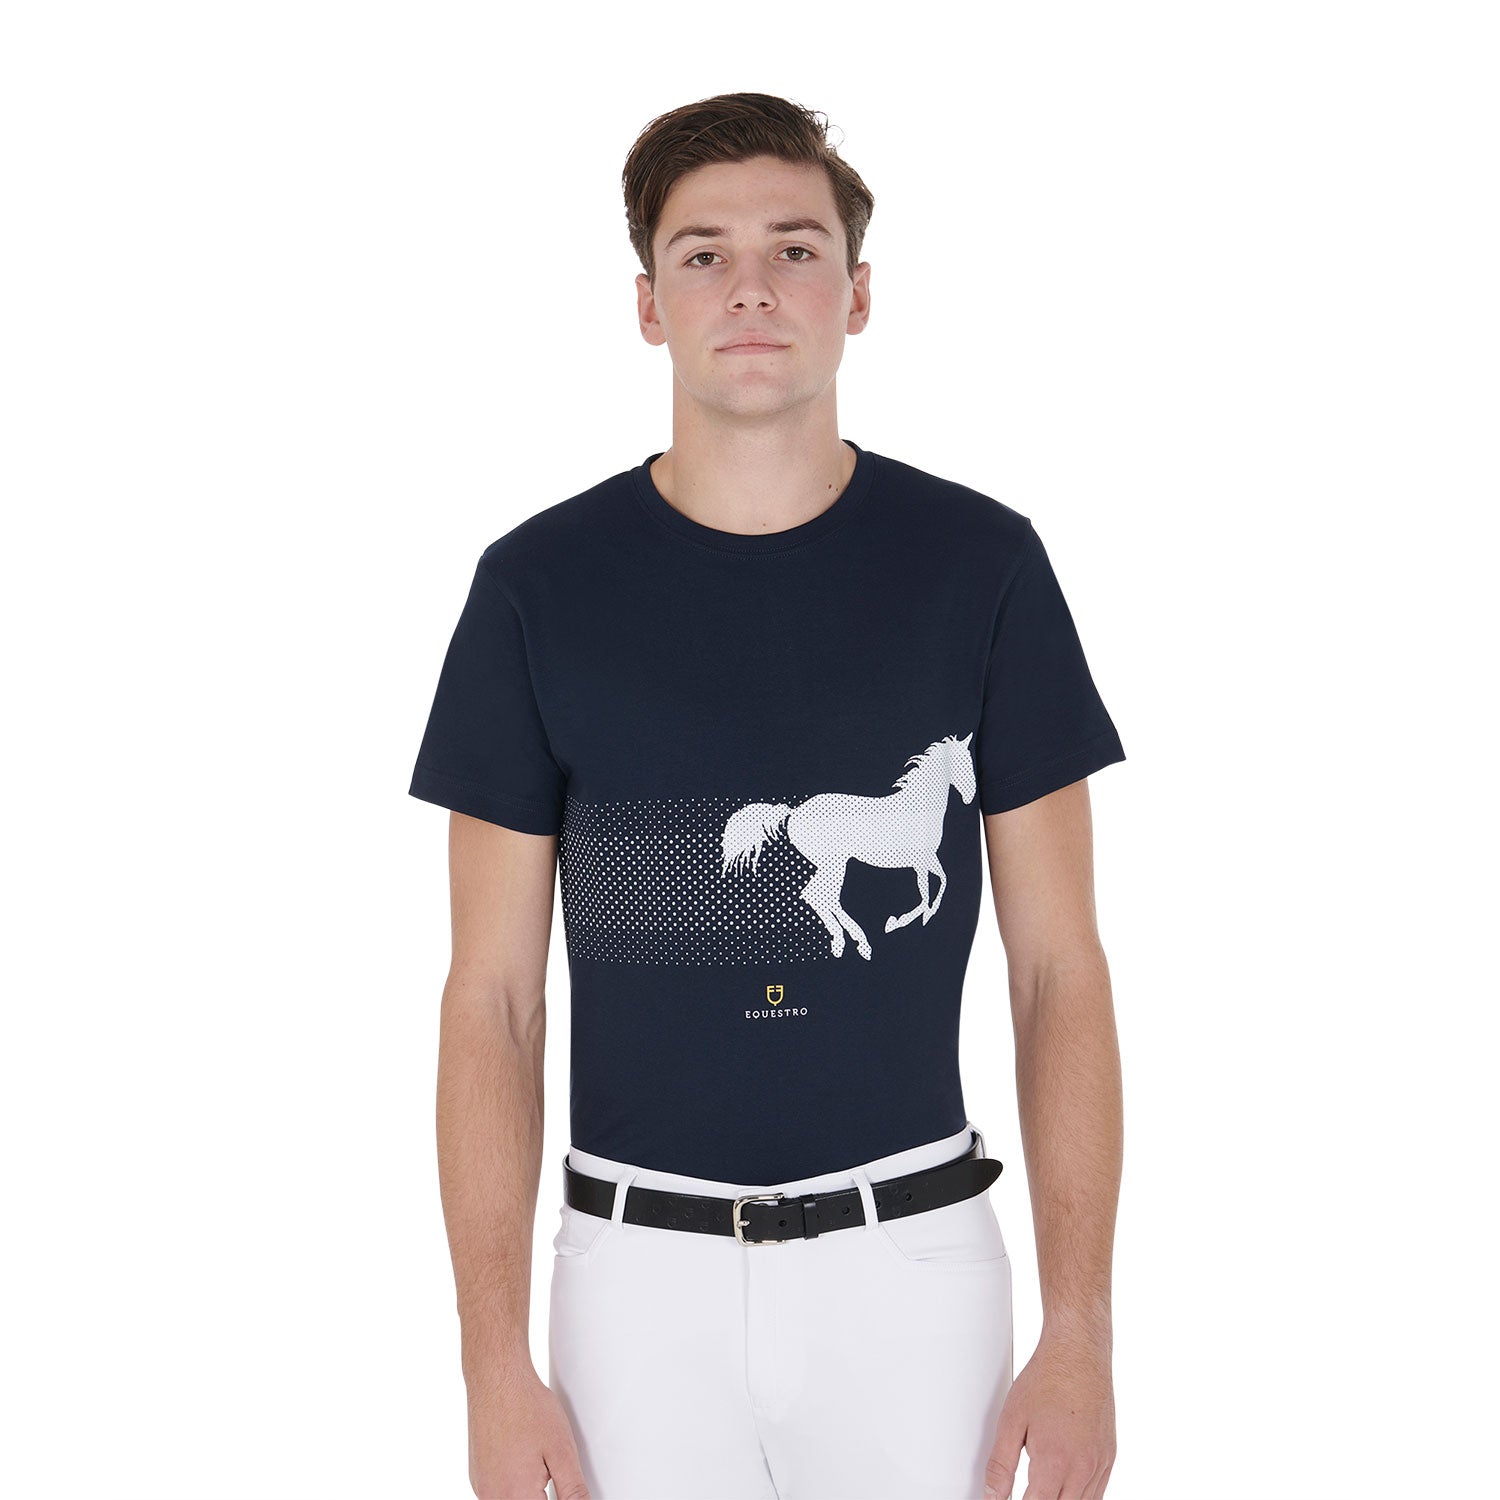 T-shirt uomo slim fit in cotone a mezza manica Equestro con cavallo che galoppa